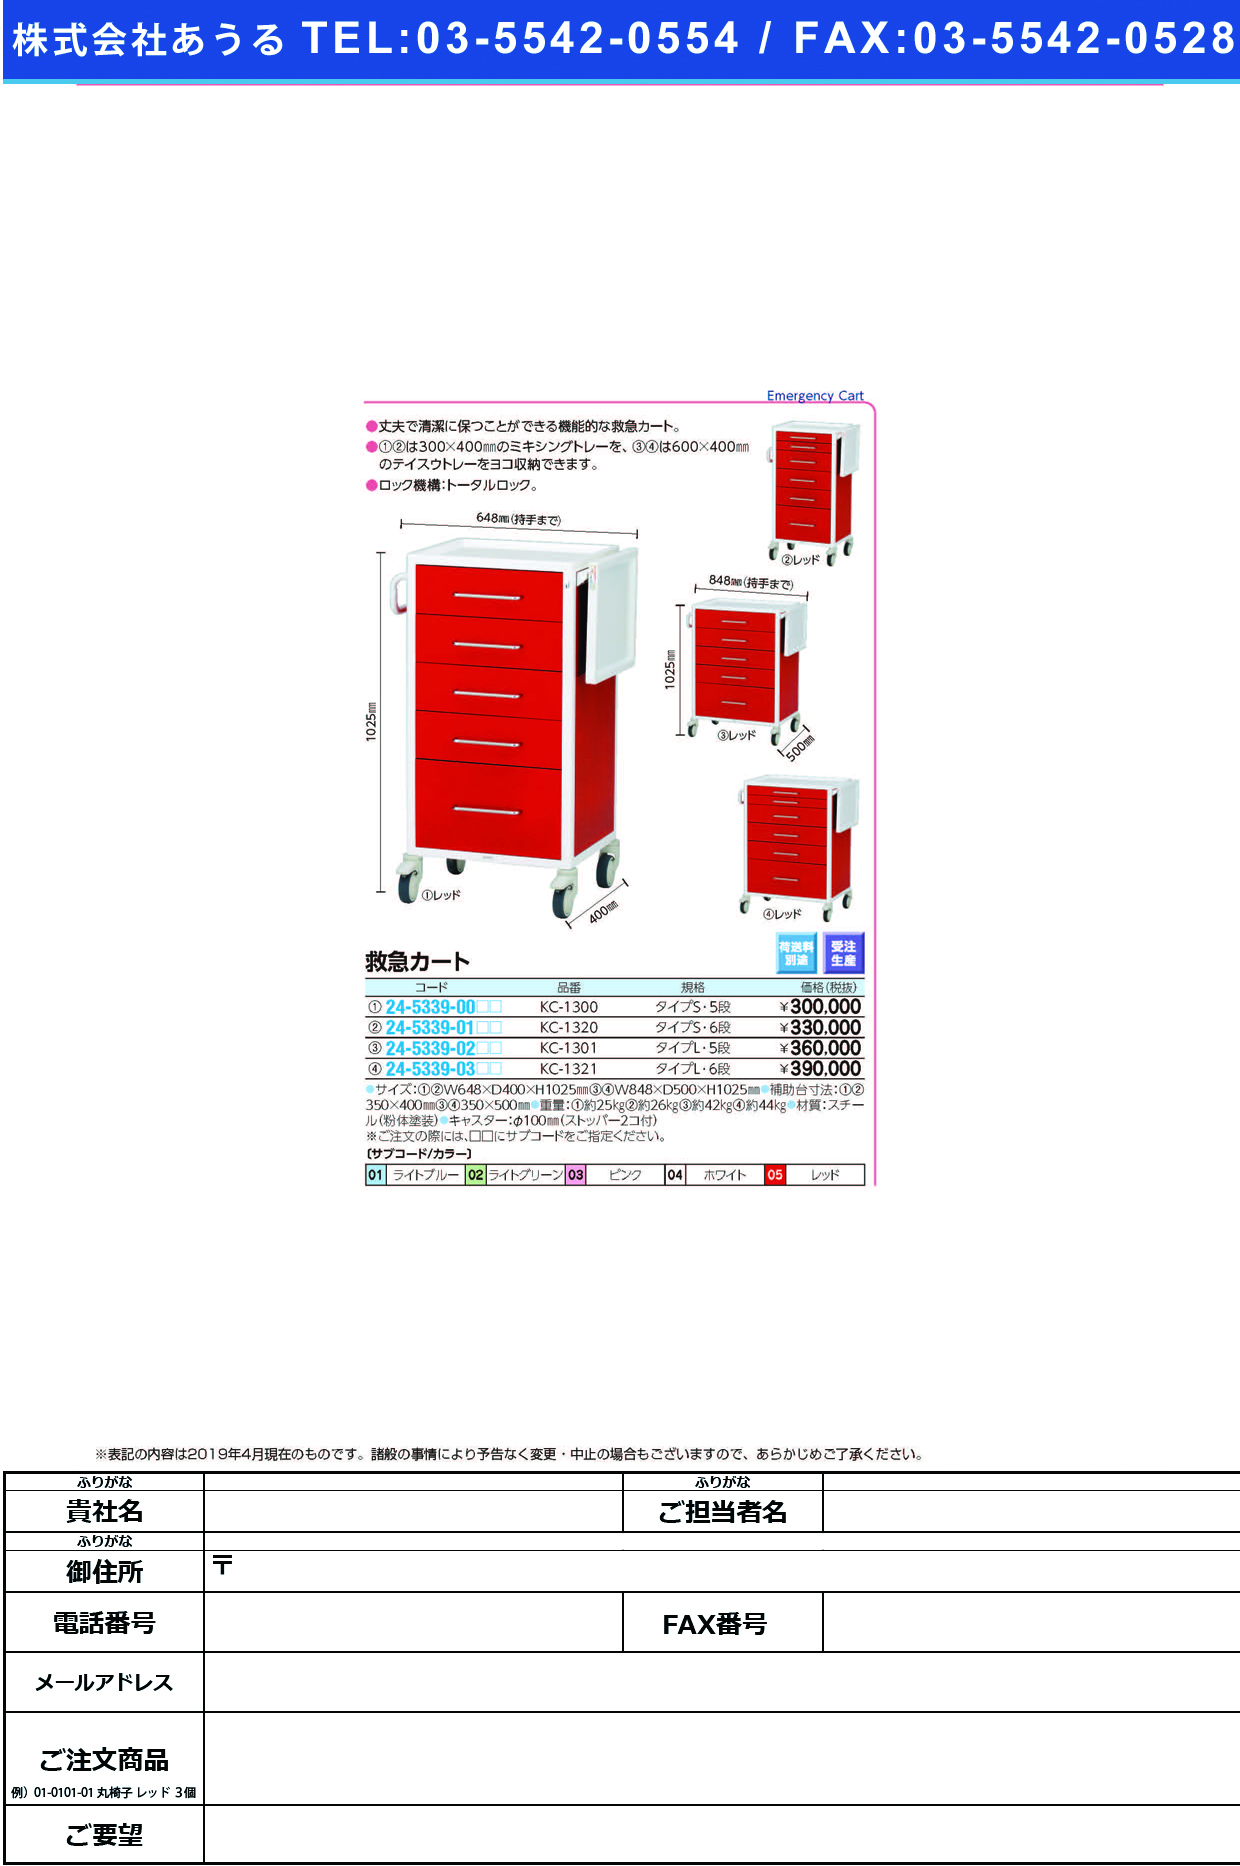 (24-5339-03)救急カートタイプＬ KC-1321(6ﾀﾞﾝ) ｷｭｳｷｭｳｶｰﾄﾀｲﾌﾟL ピンク(ケルン)【1台単位】【2019年カタログ商品】